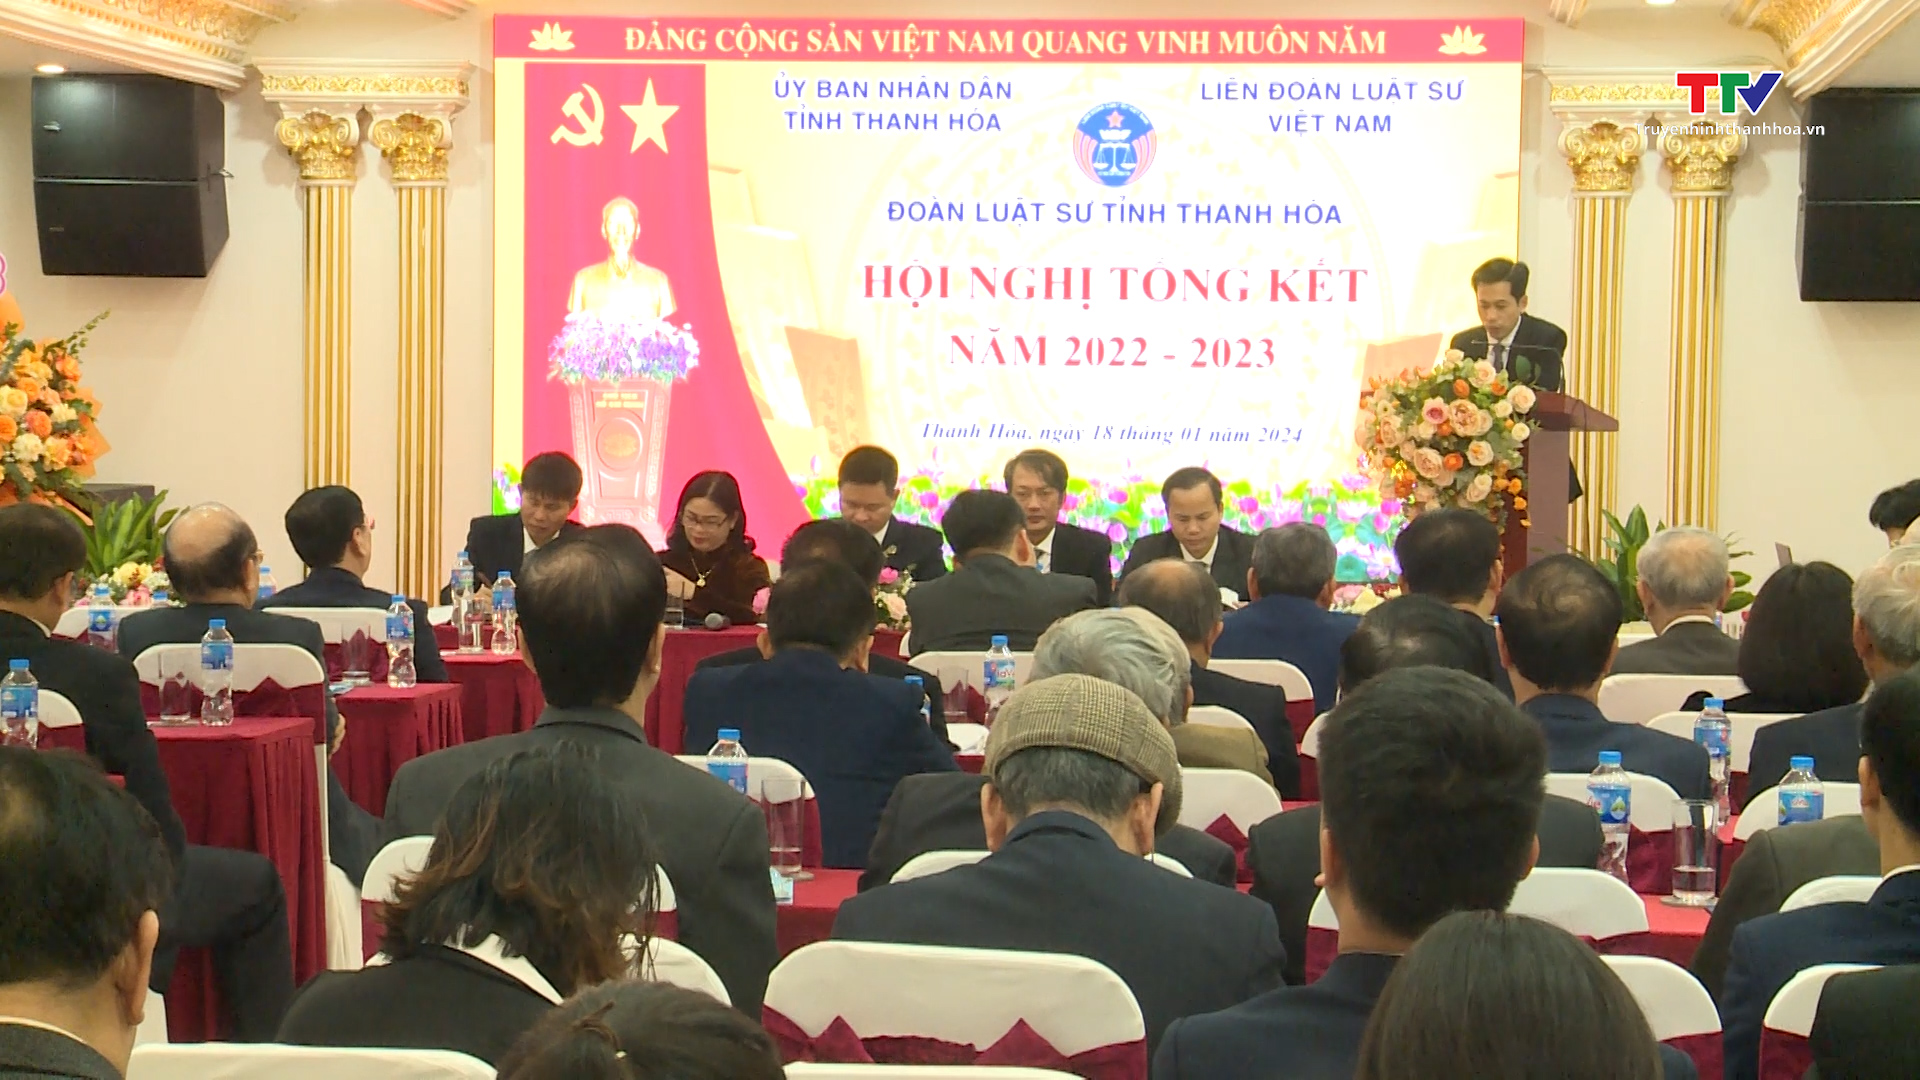 Đoàn Luật sư tỉnh Thanh Hoá tổng kết công tác năm 2022 - 2023- Ảnh 1.